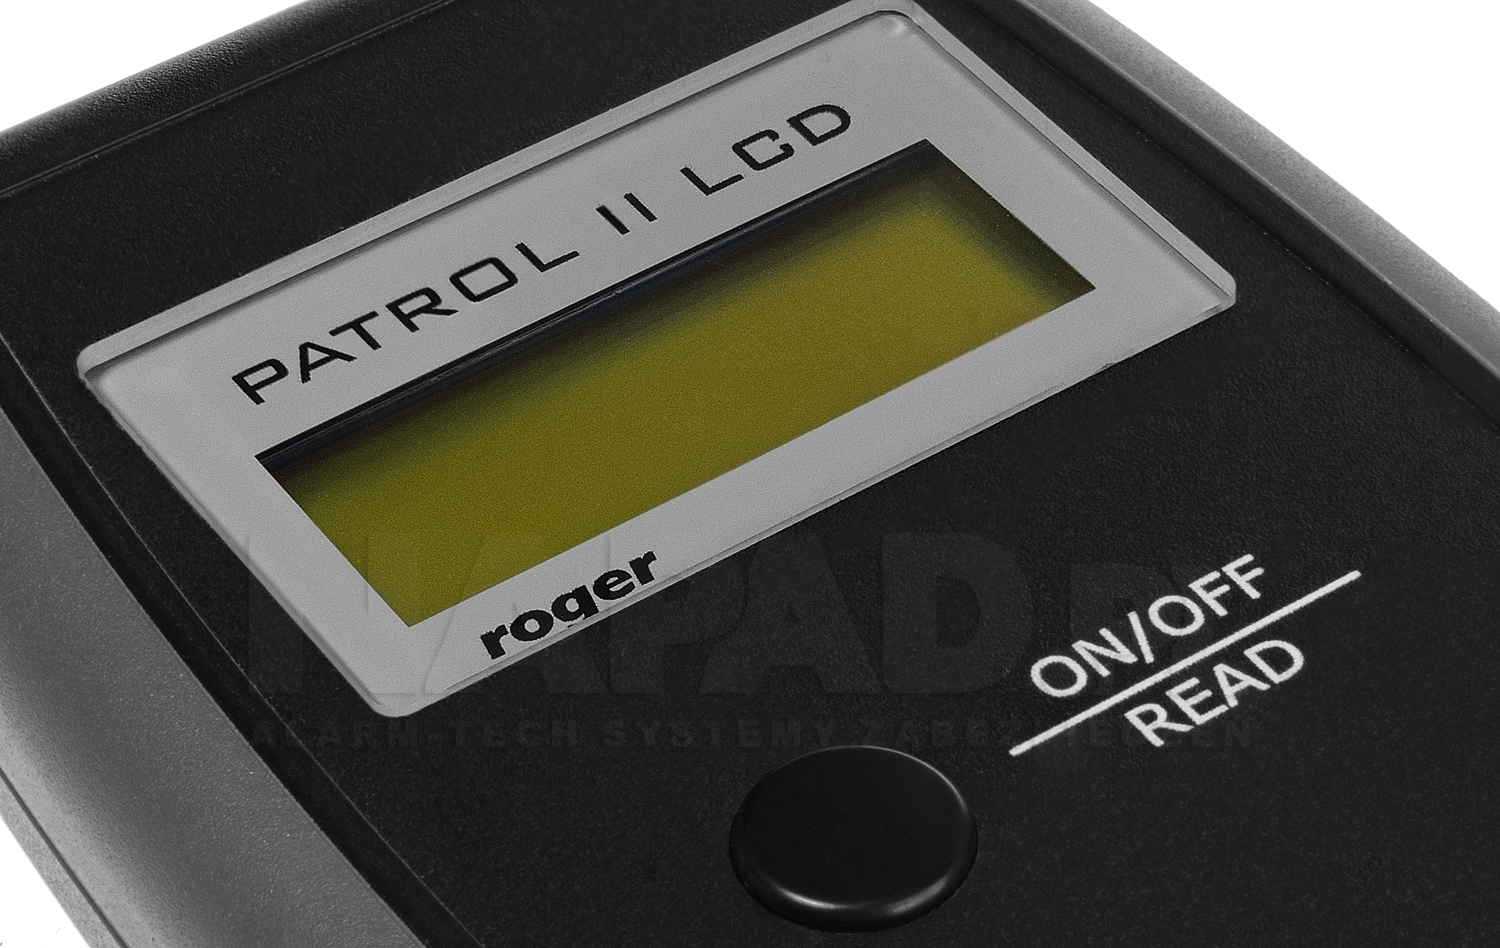 Wyświetlacz przenośnego czytnika zbliżeniowego Patrol II LCD.